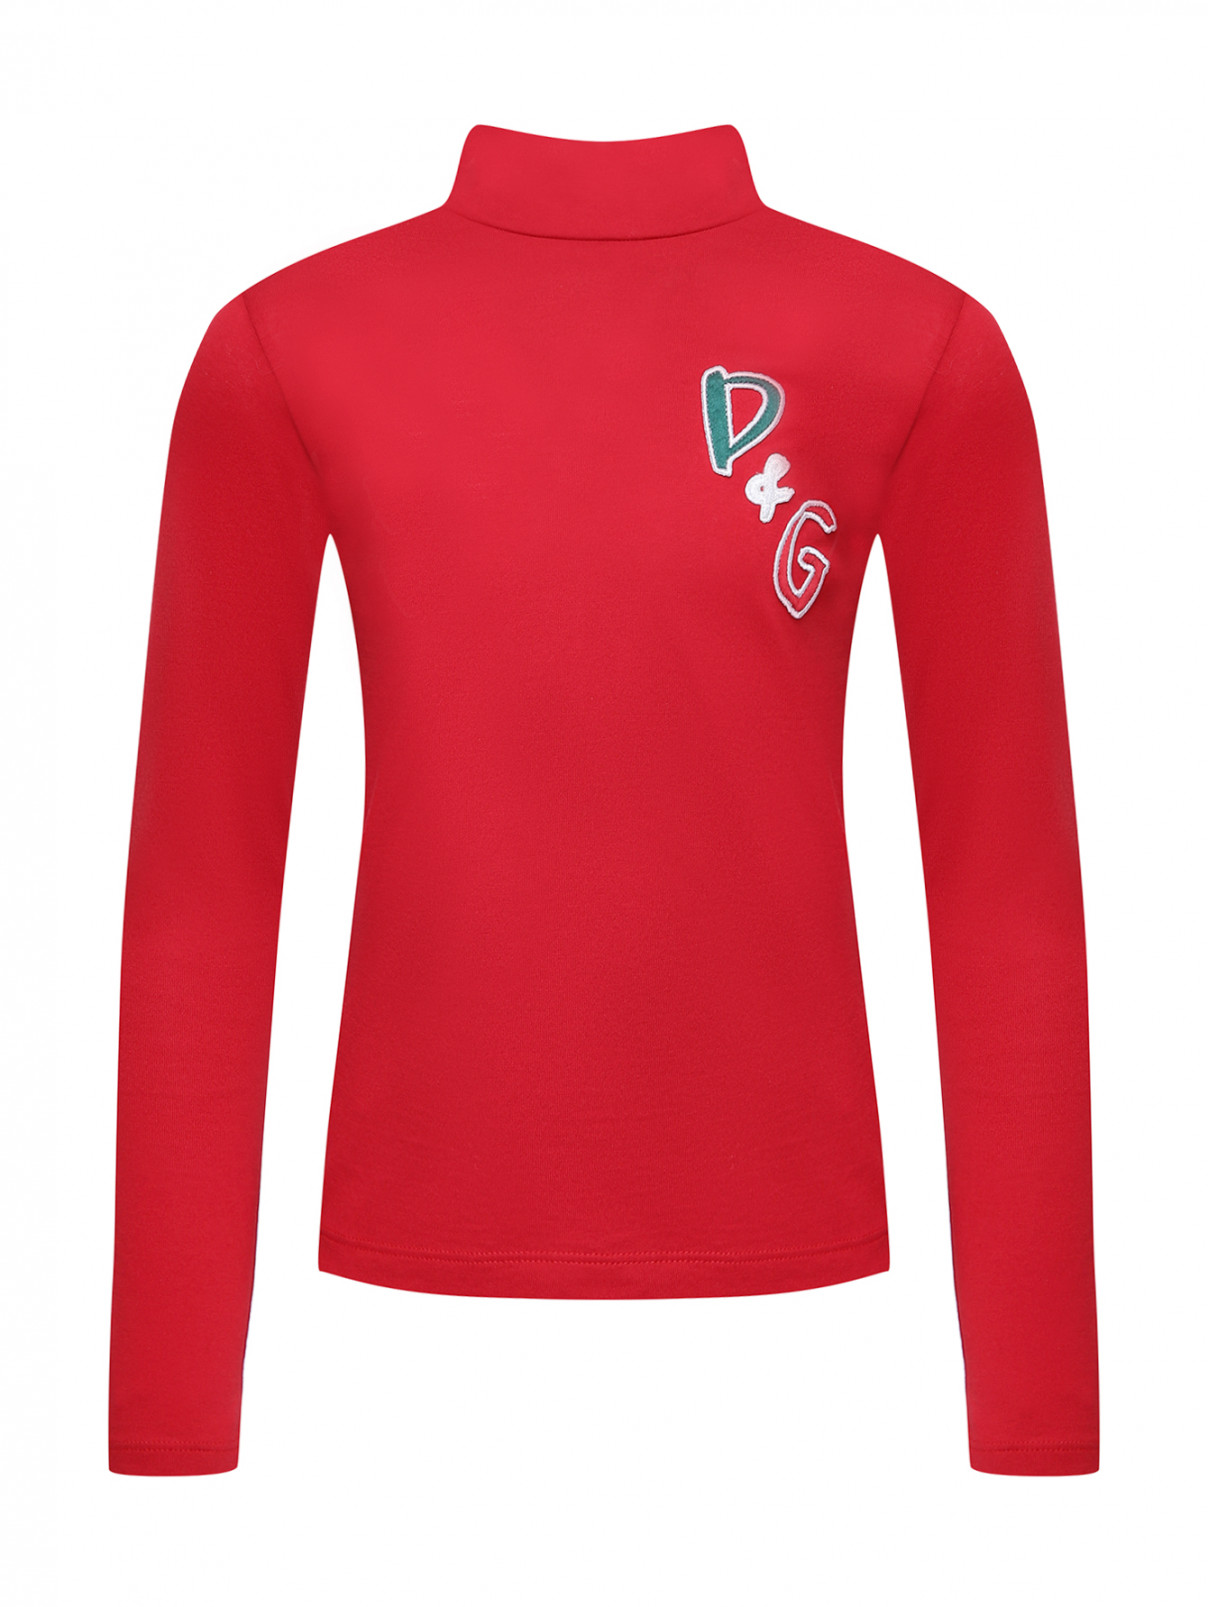 Однотонная блуза с аппликацией Dolce & Gabbana  –  Общий вид  – Цвет:  Красный